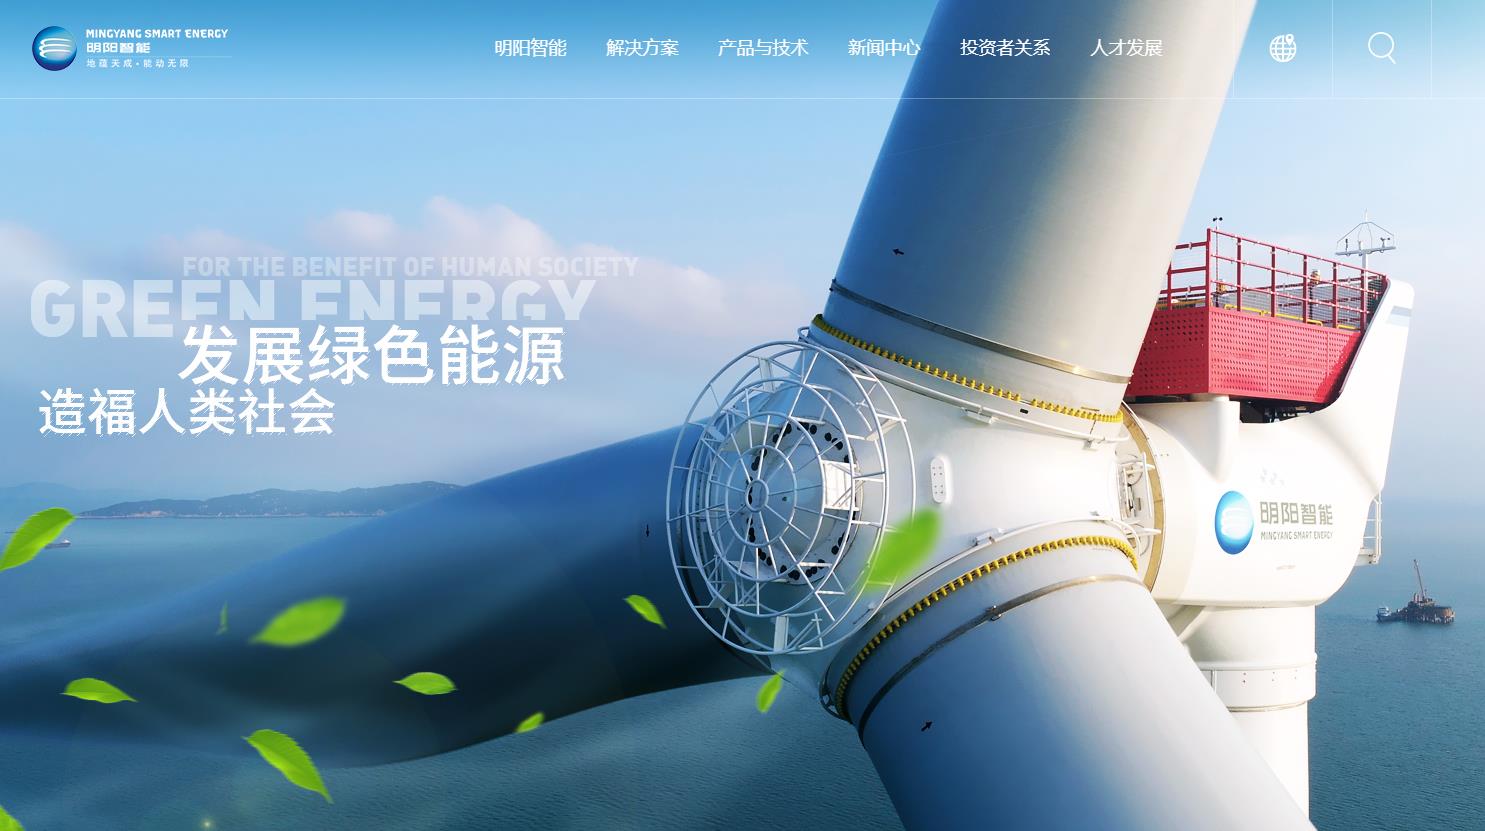 明阳智慧能源集团股份公司10MW级海上漂浮式风机设计研发项目总投资 72500.0万元